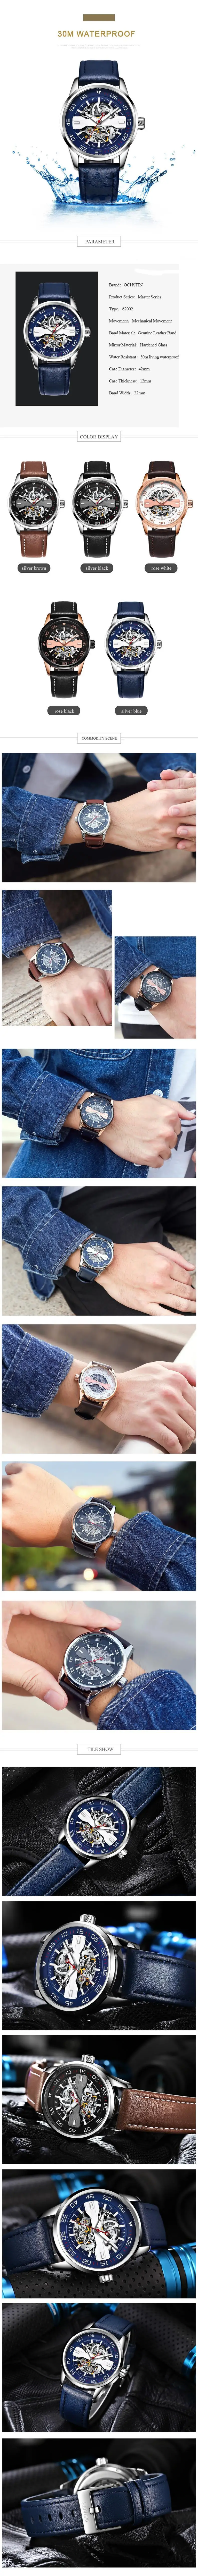 Лидирующий бренд ochстин мужские синие деловые автоматические механические часы мужские спортивные наручные часы Мужские часы для подарка